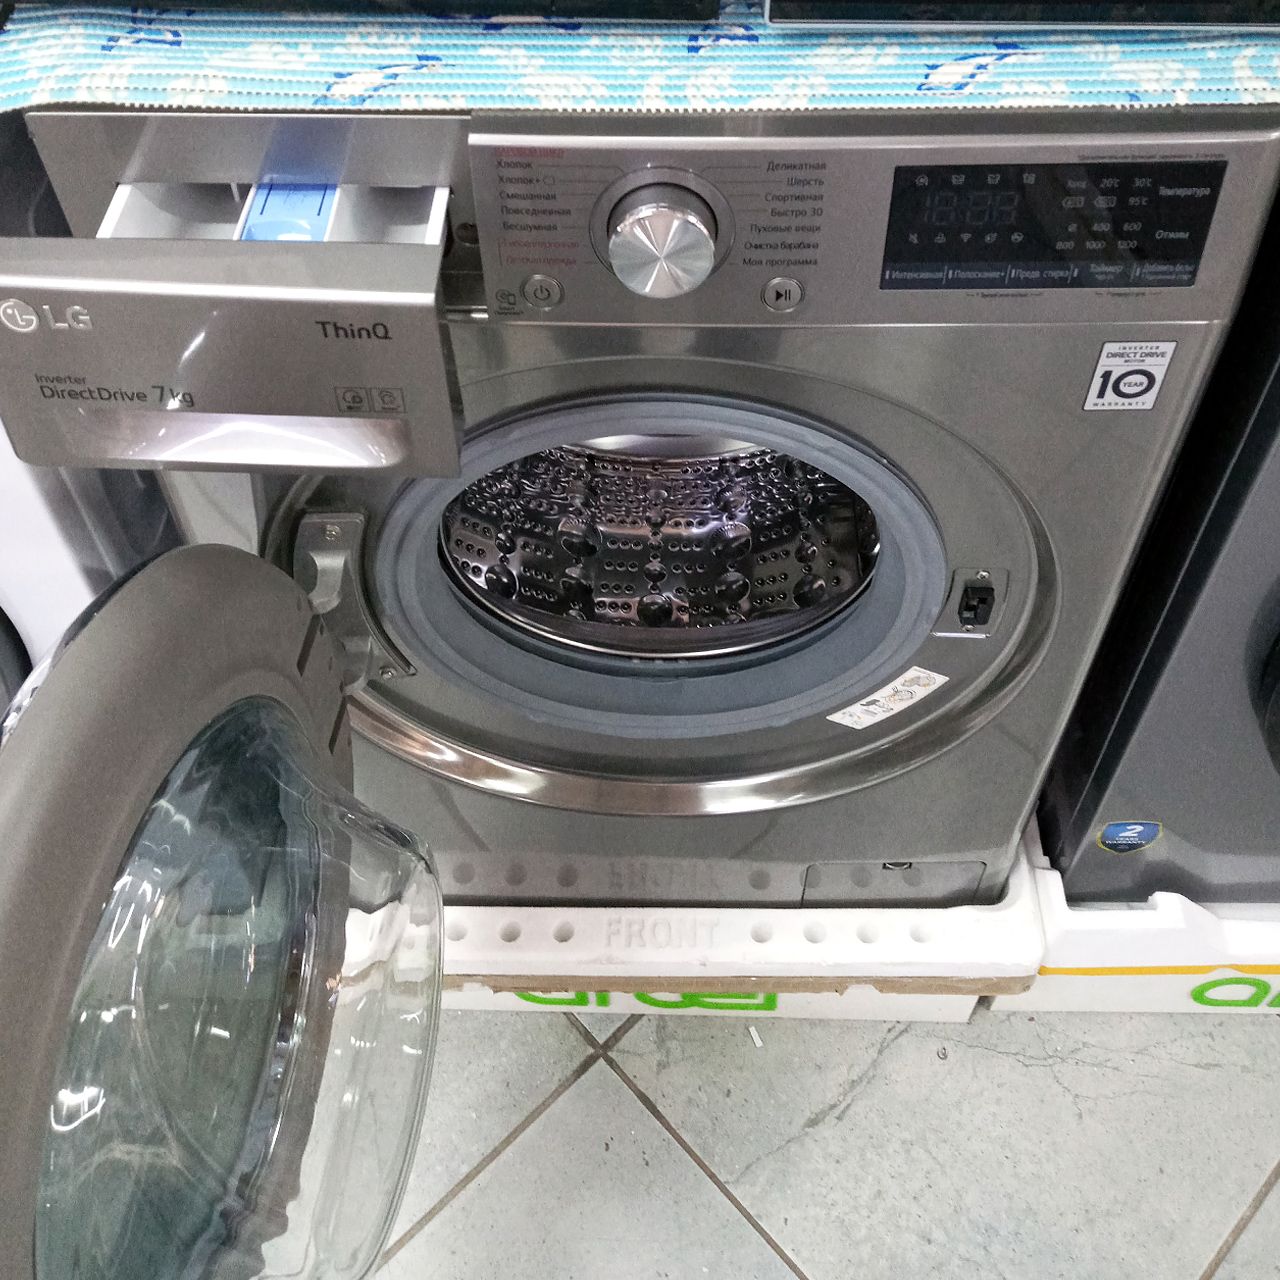 Стиральная машина LG 7 кг